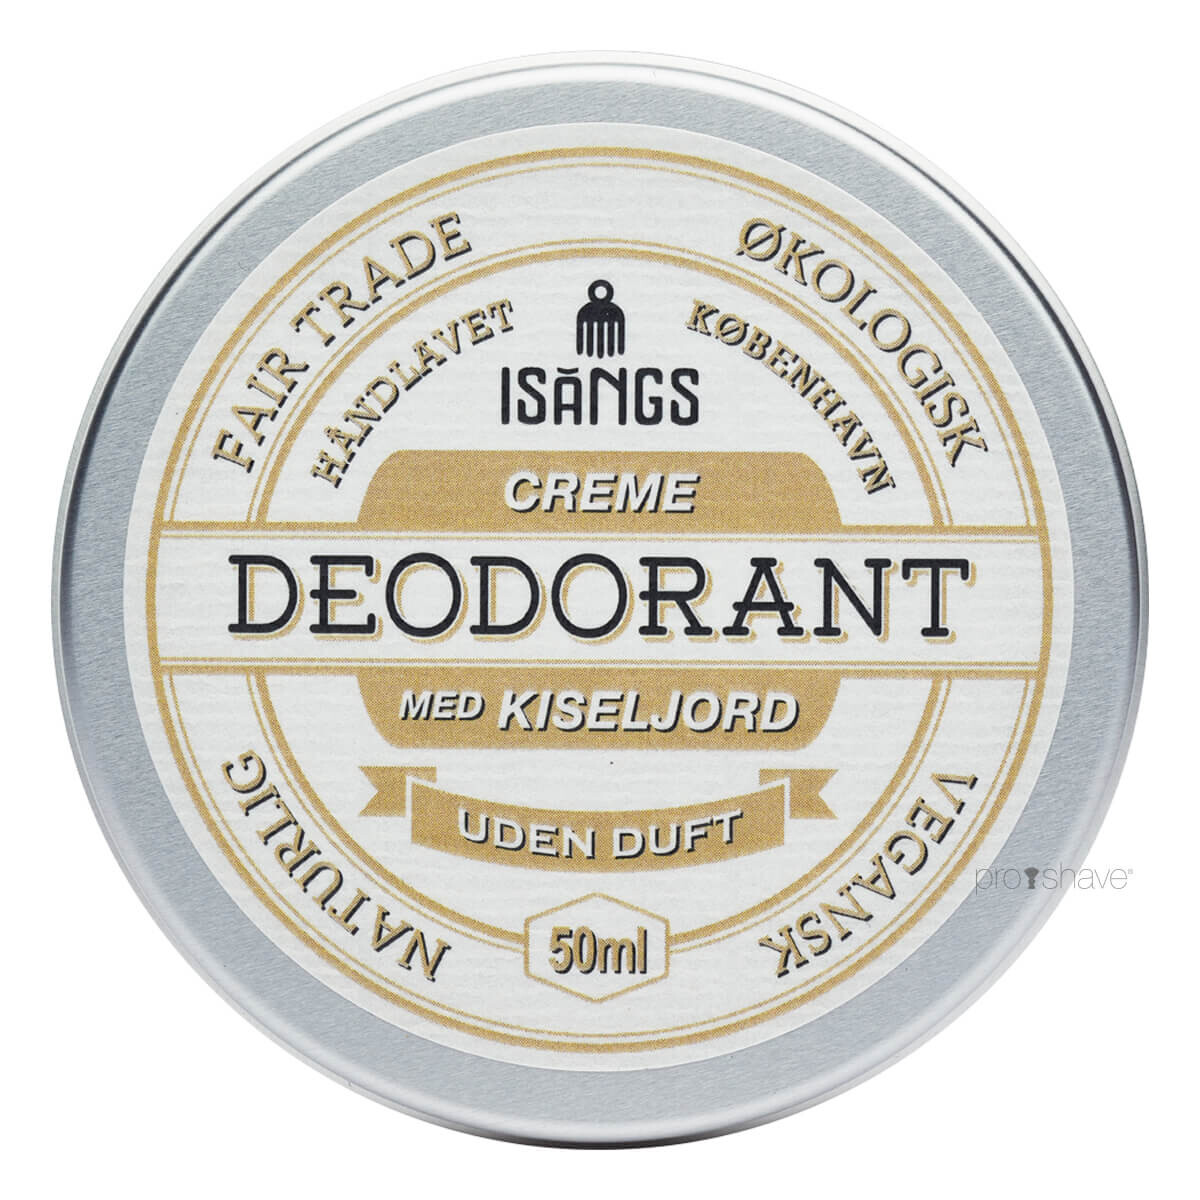 Se Isangs Creme Deodorant med Kiseljord, Uden duft, 50 ml. hos Proshave